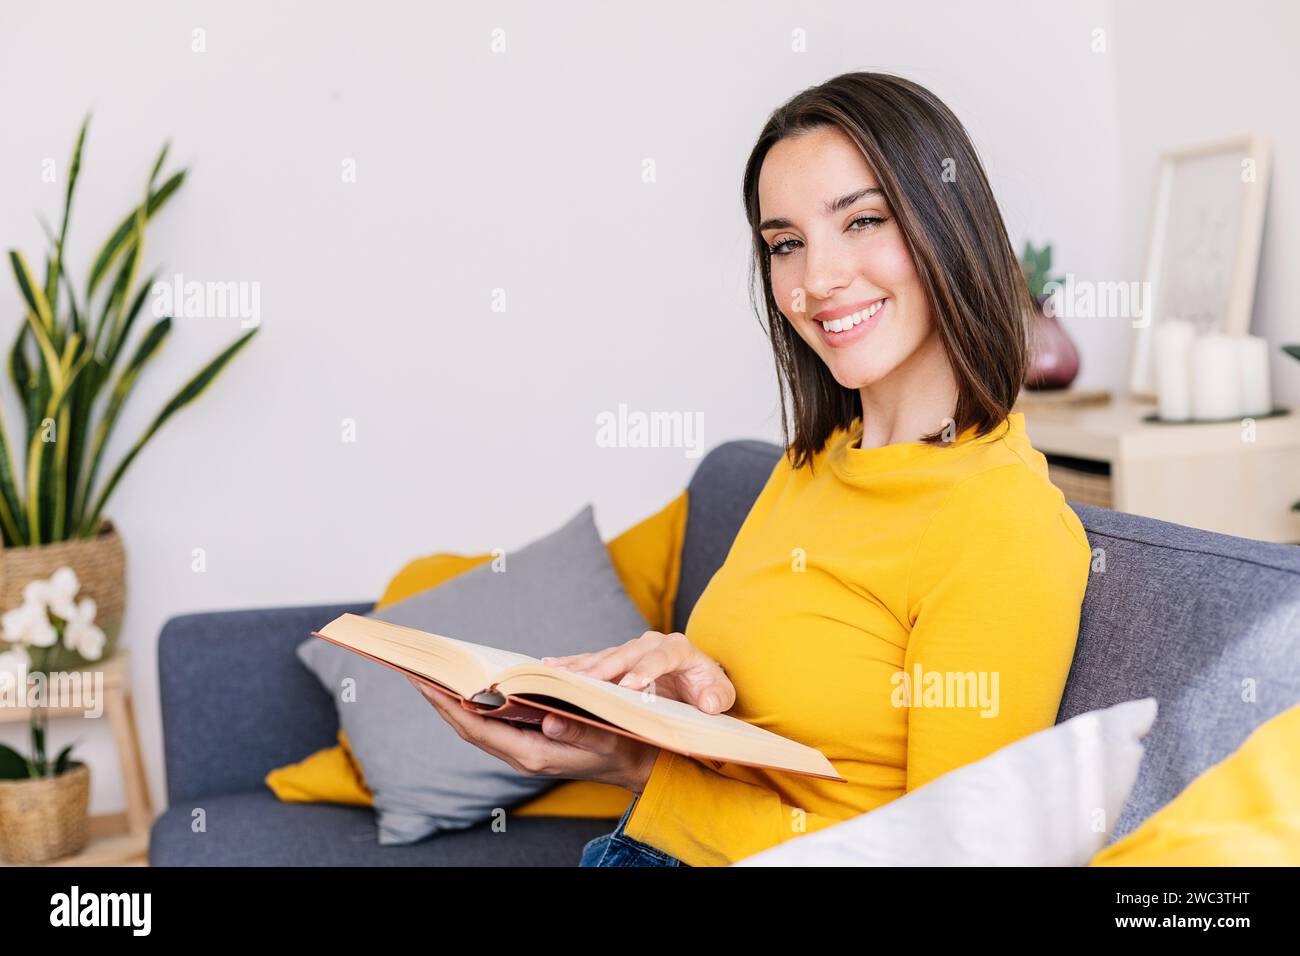 Lächelndes Porträt einer jungen schönen Frau, die ein Buch auf der Couch liest Stockfoto